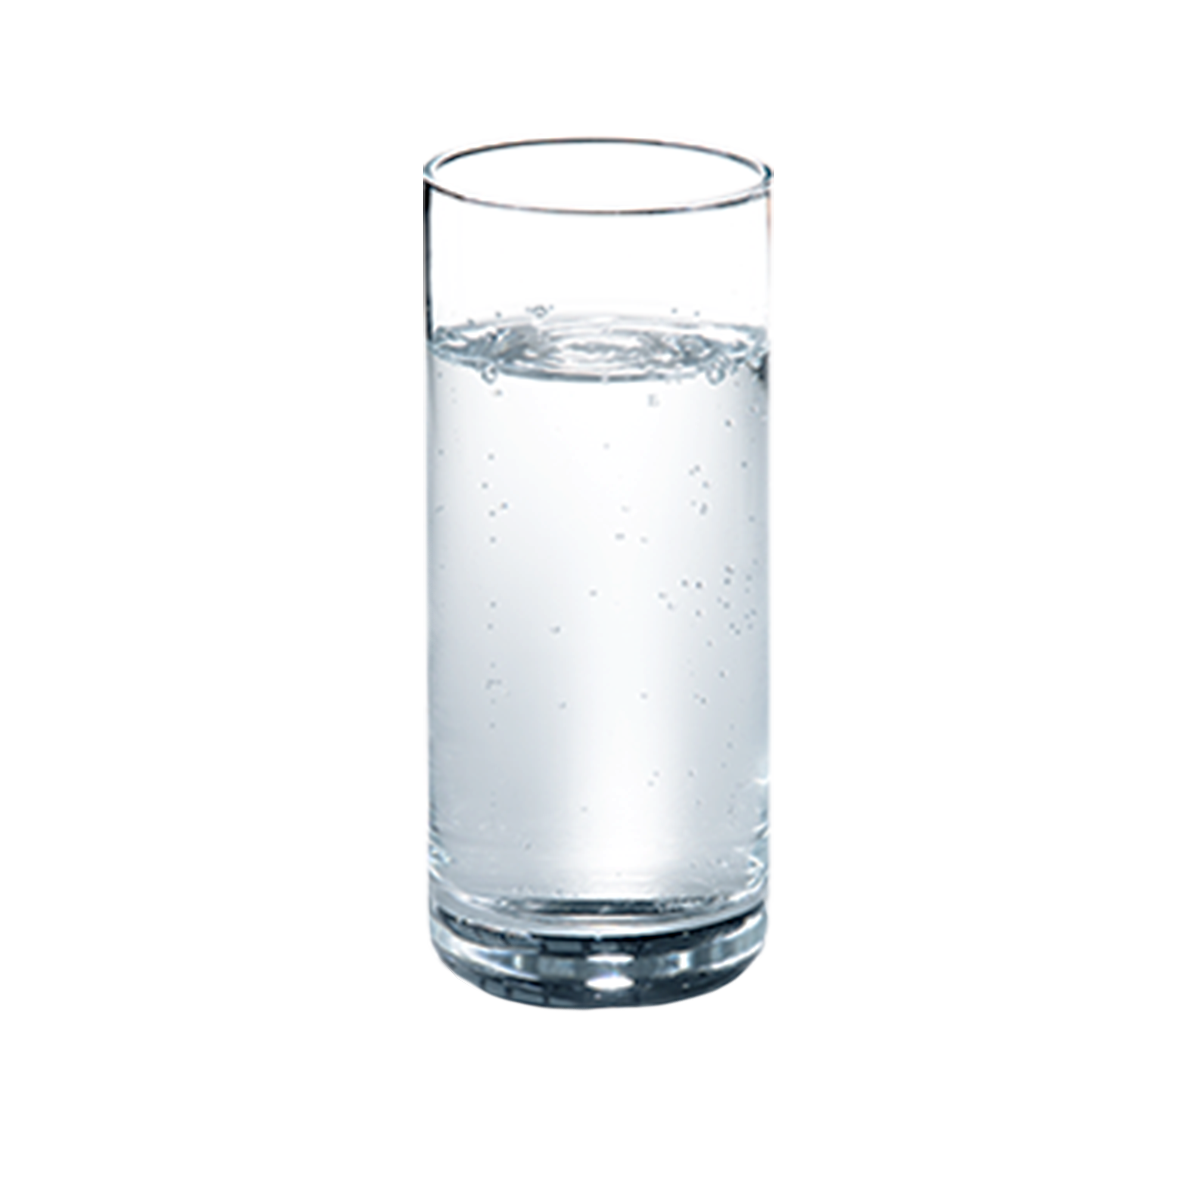 Vandglas classic